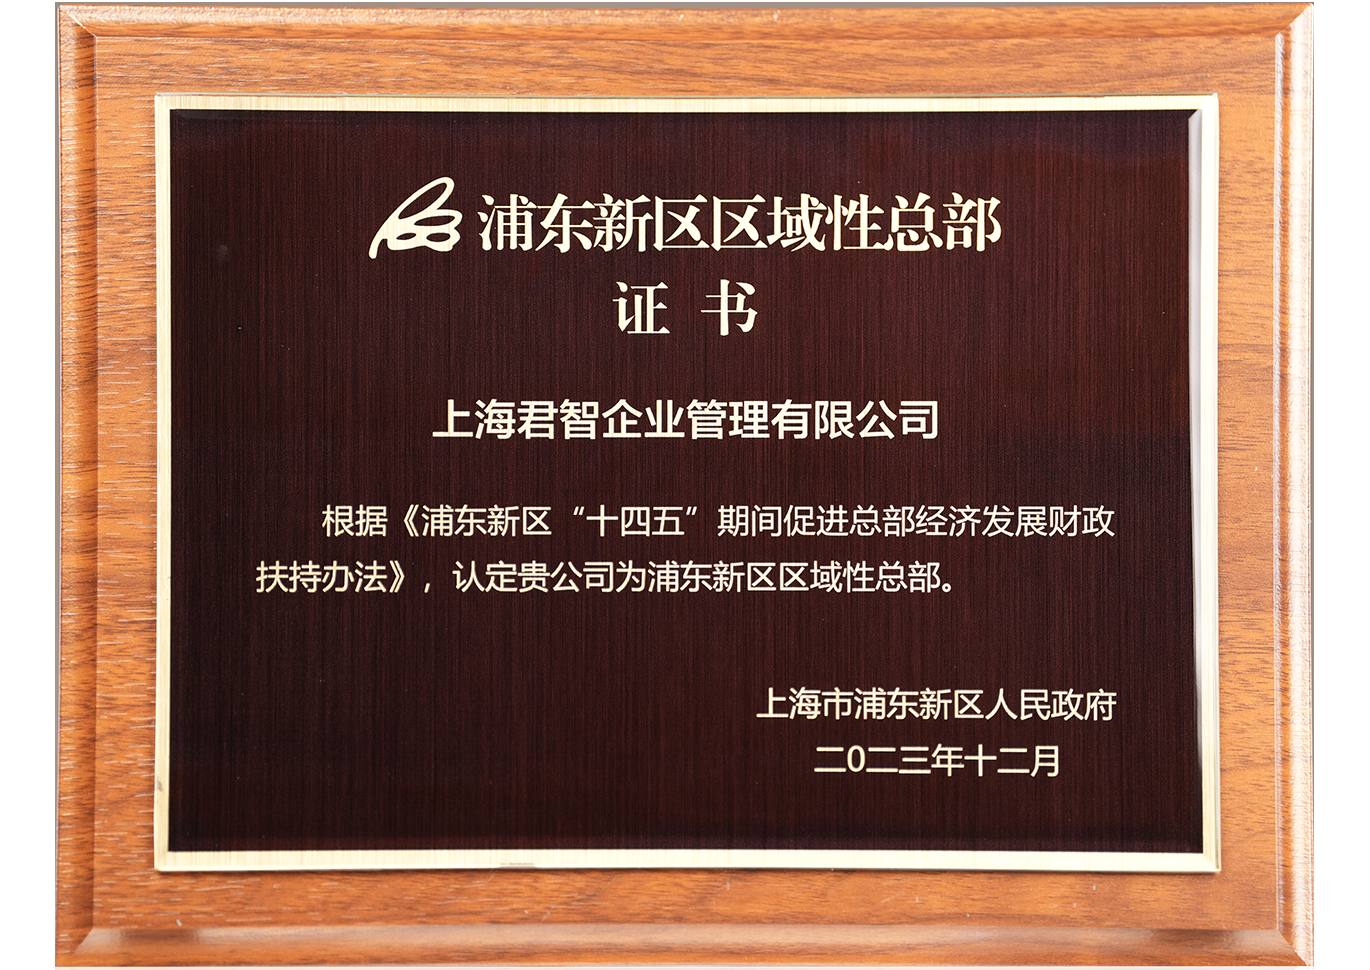 获颁“浦东新区区域性总部”证书